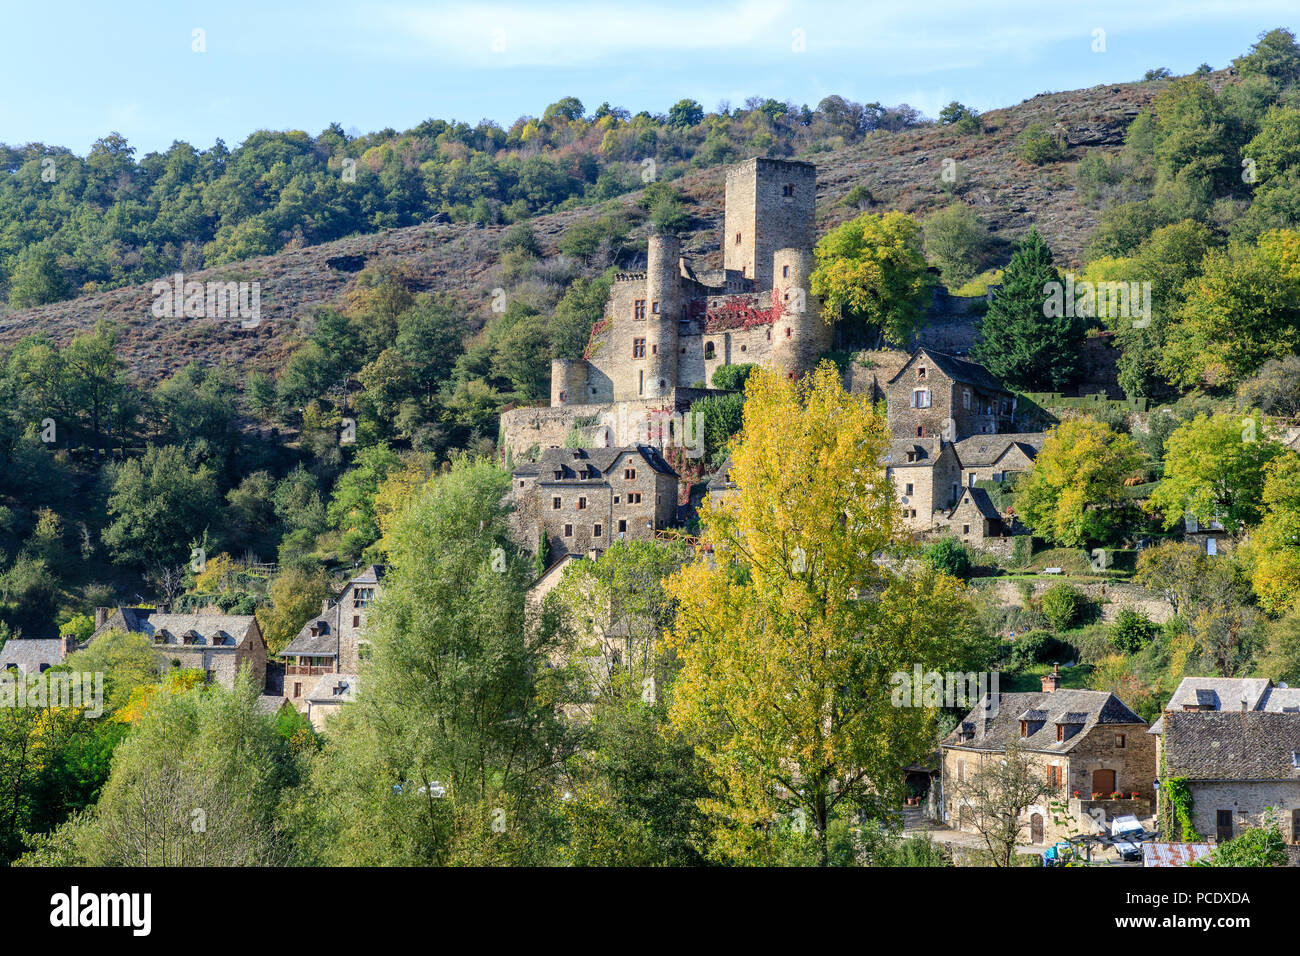 Francia, Aveyron, Belcastel, etichettati Les Plus Beaux Villages de France (i più bei villaggi di Francia), vista generale del villaggio con la c Foto Stock